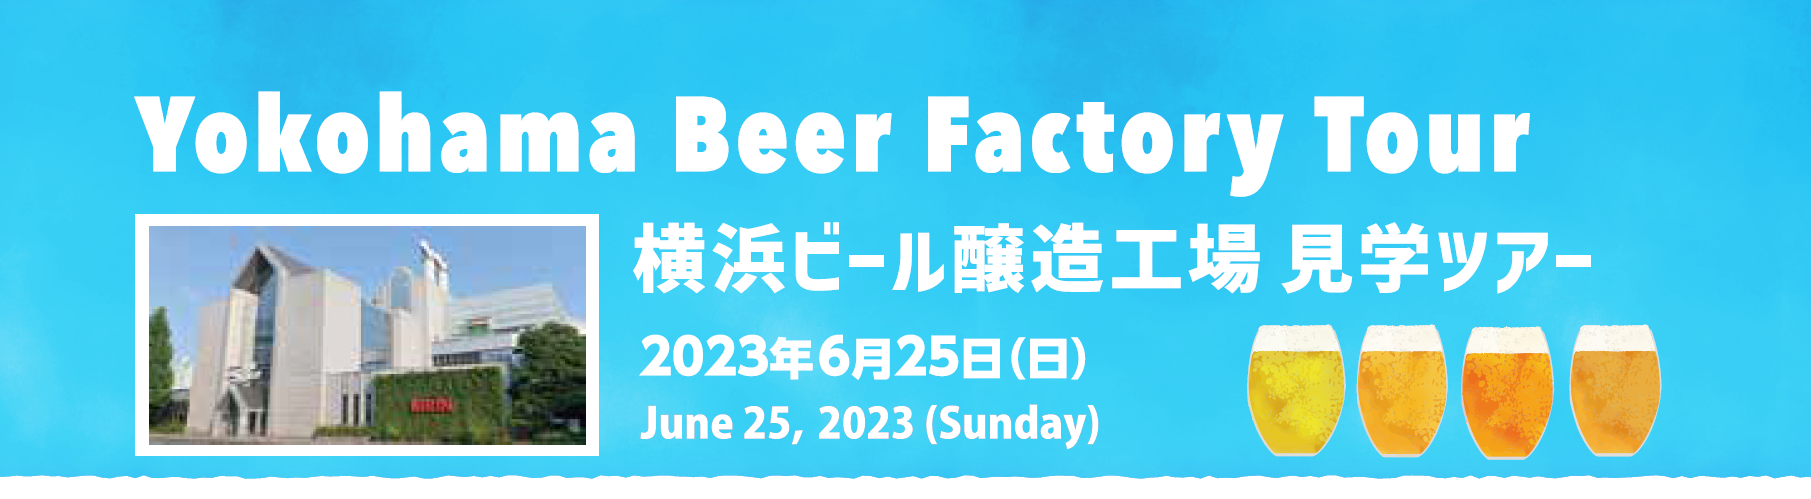 Yokohama Beer Factory Tour - June 25, 2023